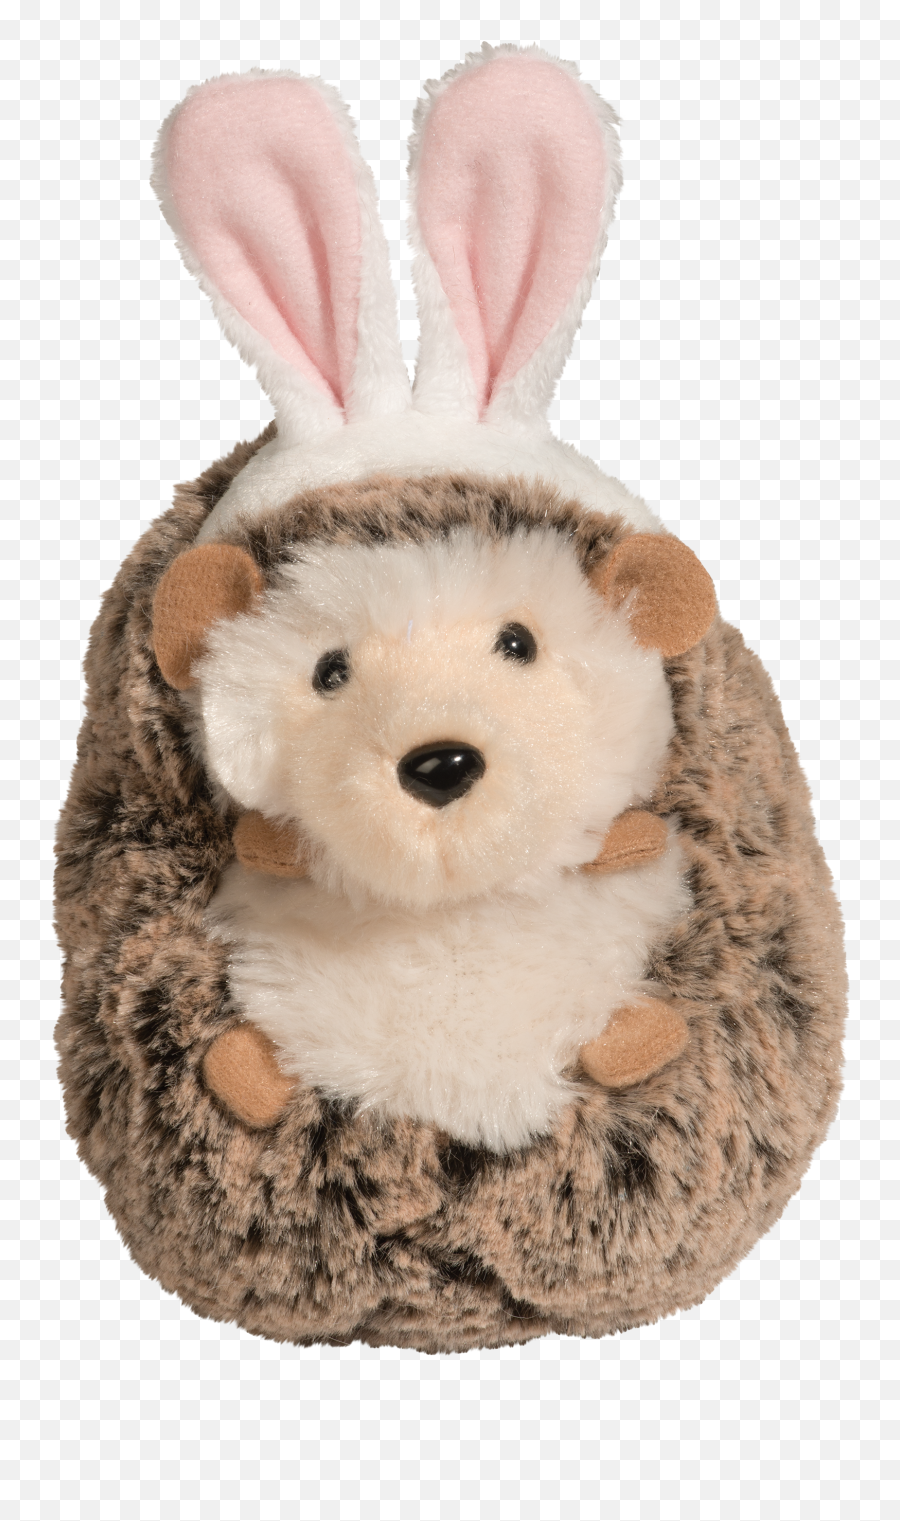 Douglas Spunky Hedgehog With Bunny Ears - Spunky Hedgehog With Bunny Ears Png,Bunny Ears Png